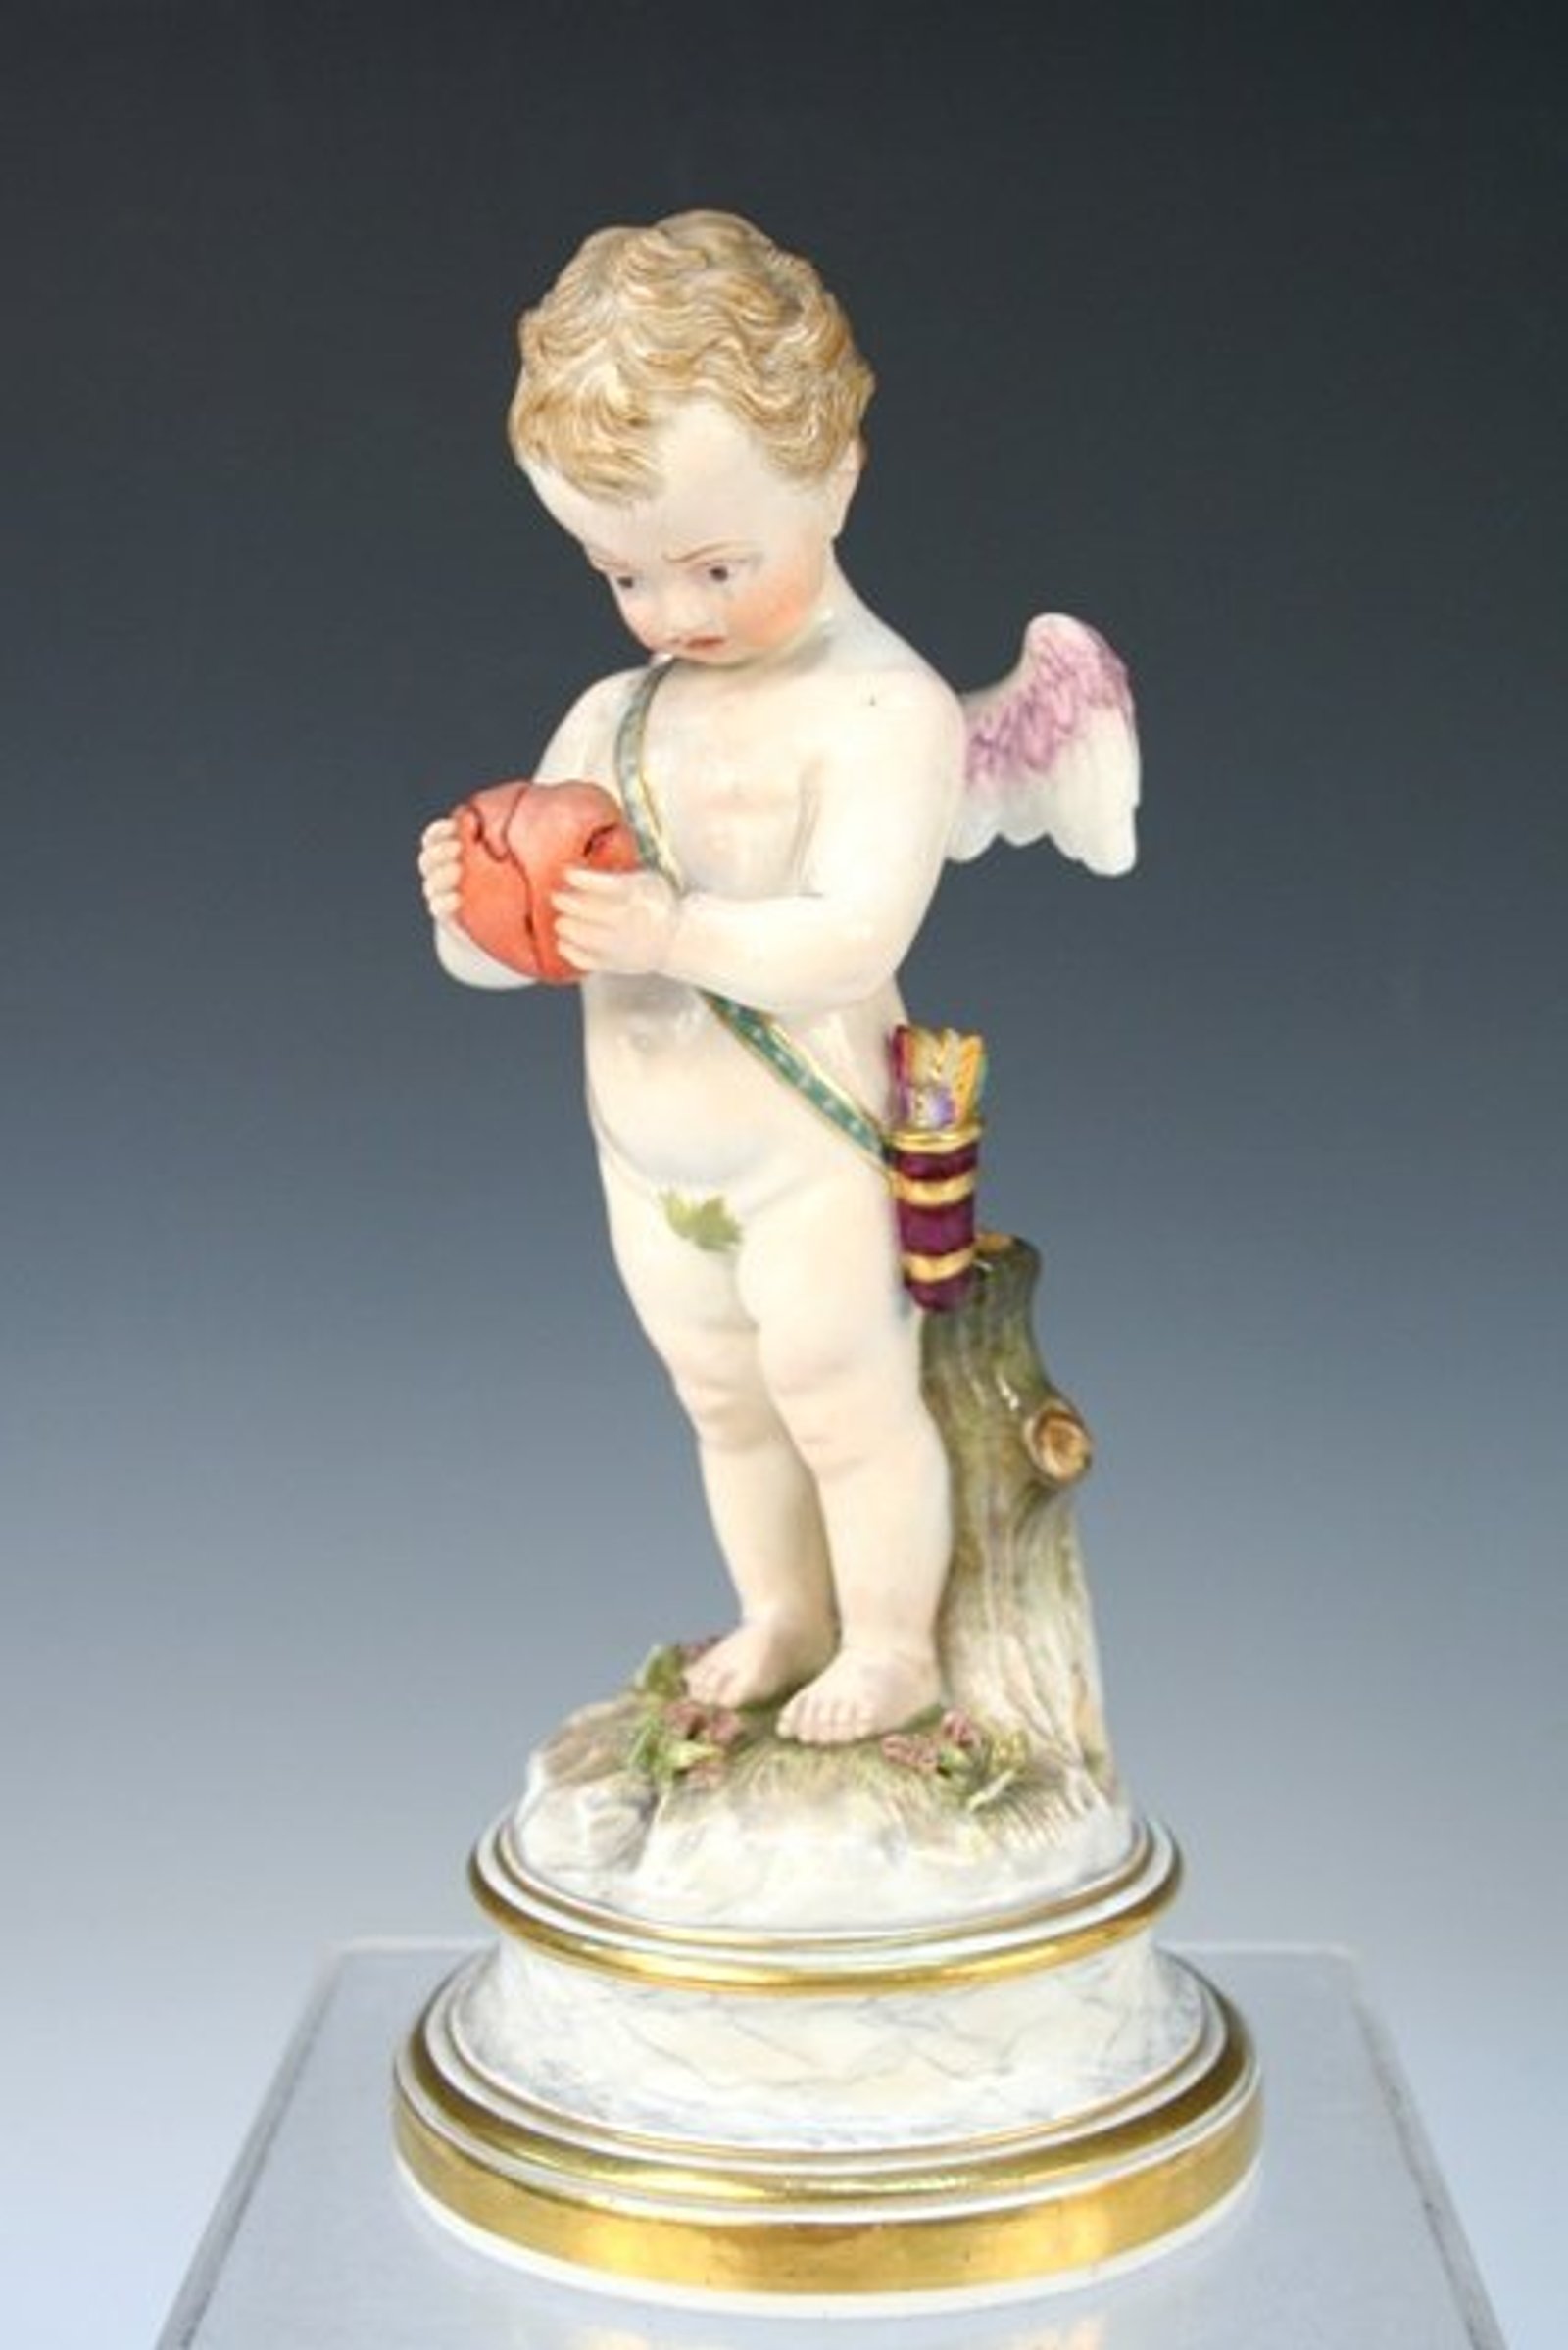 L-Series Porcelain Putto/Cupid Figure